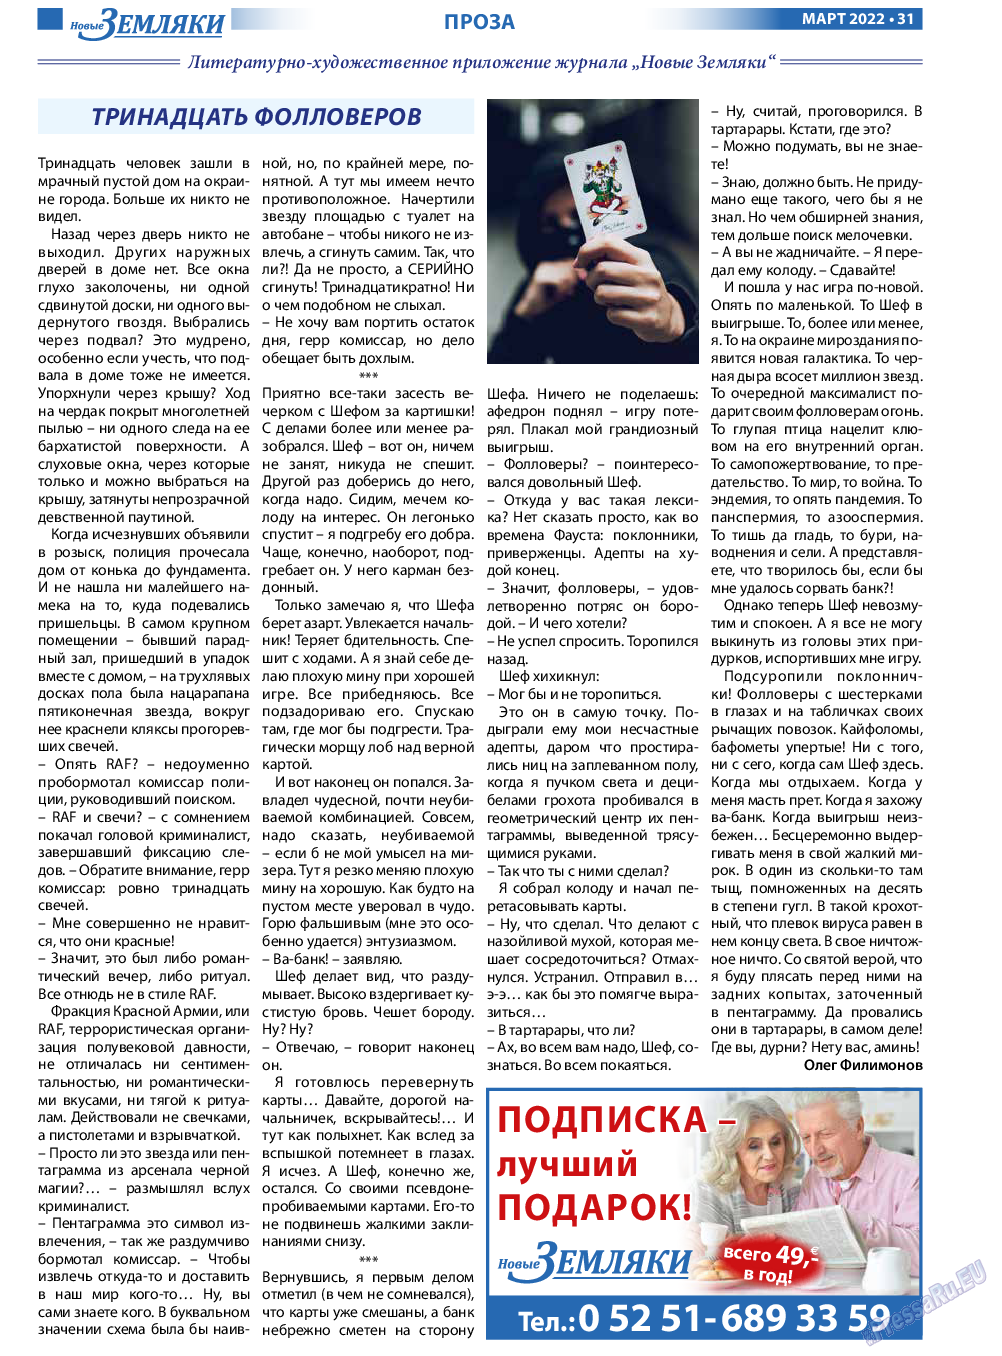 Новые Земляки, газета. 2022 №3 стр.31